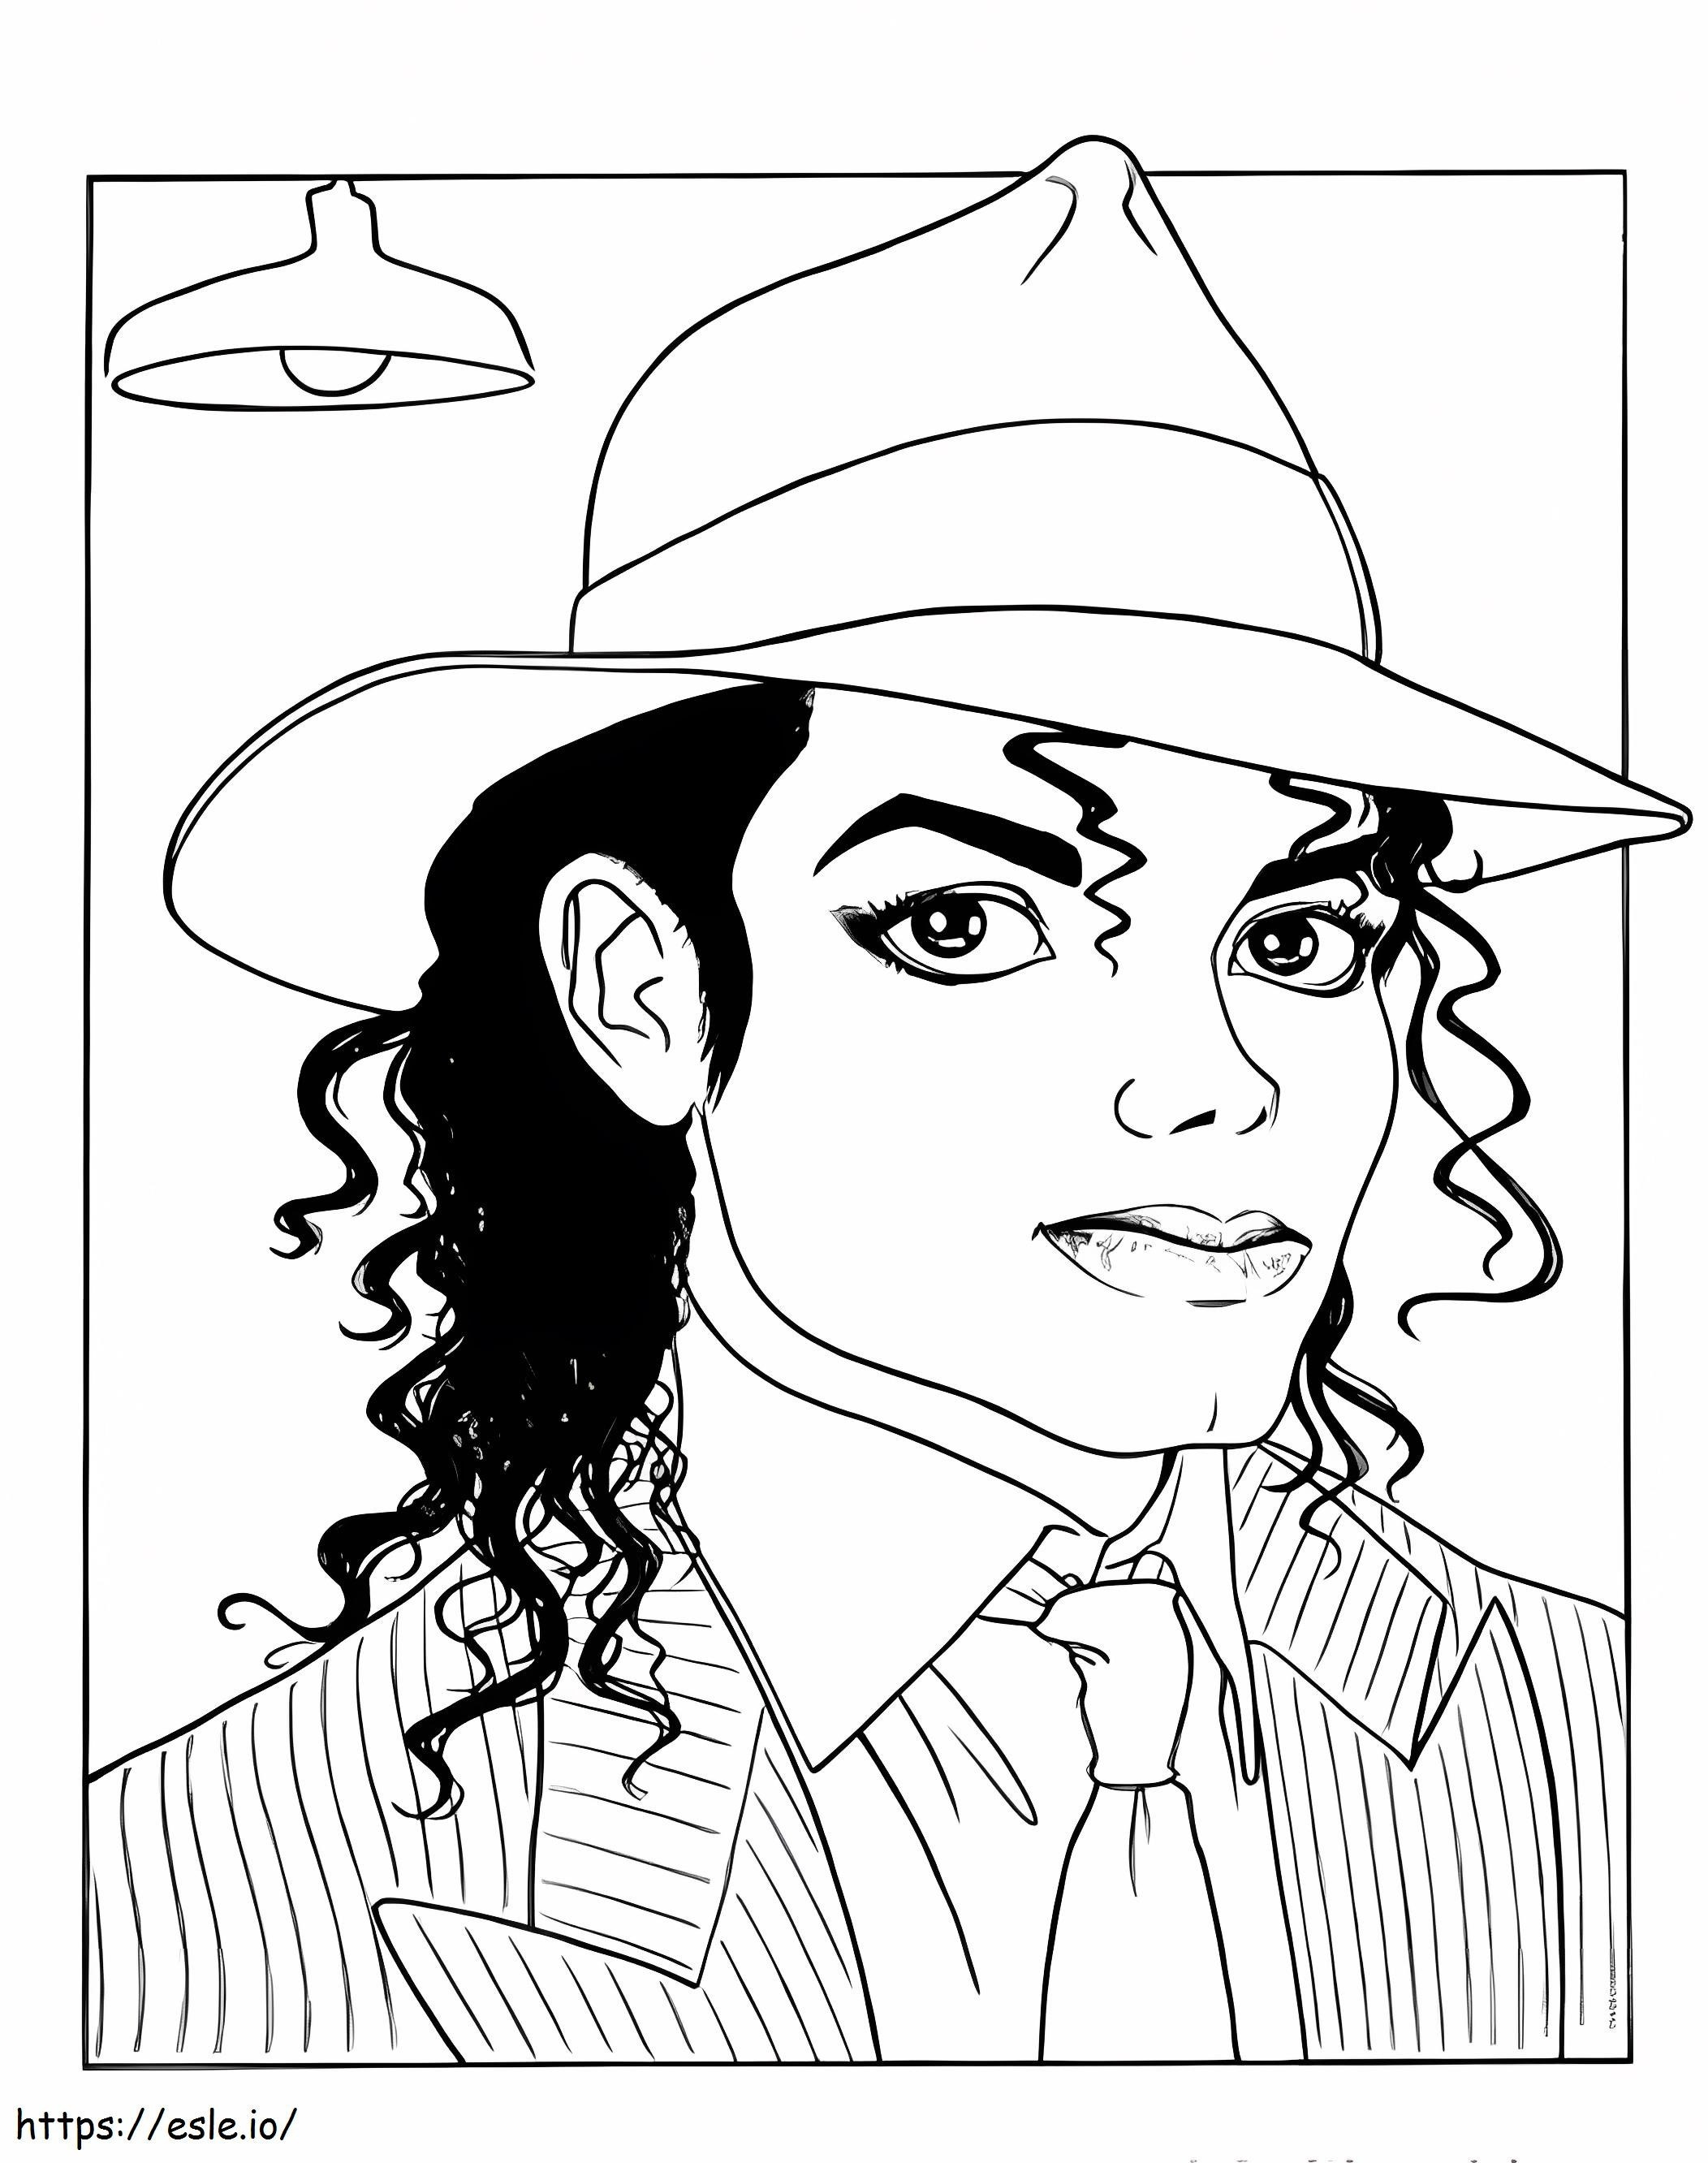 Gentil Michael Jackson coloring page